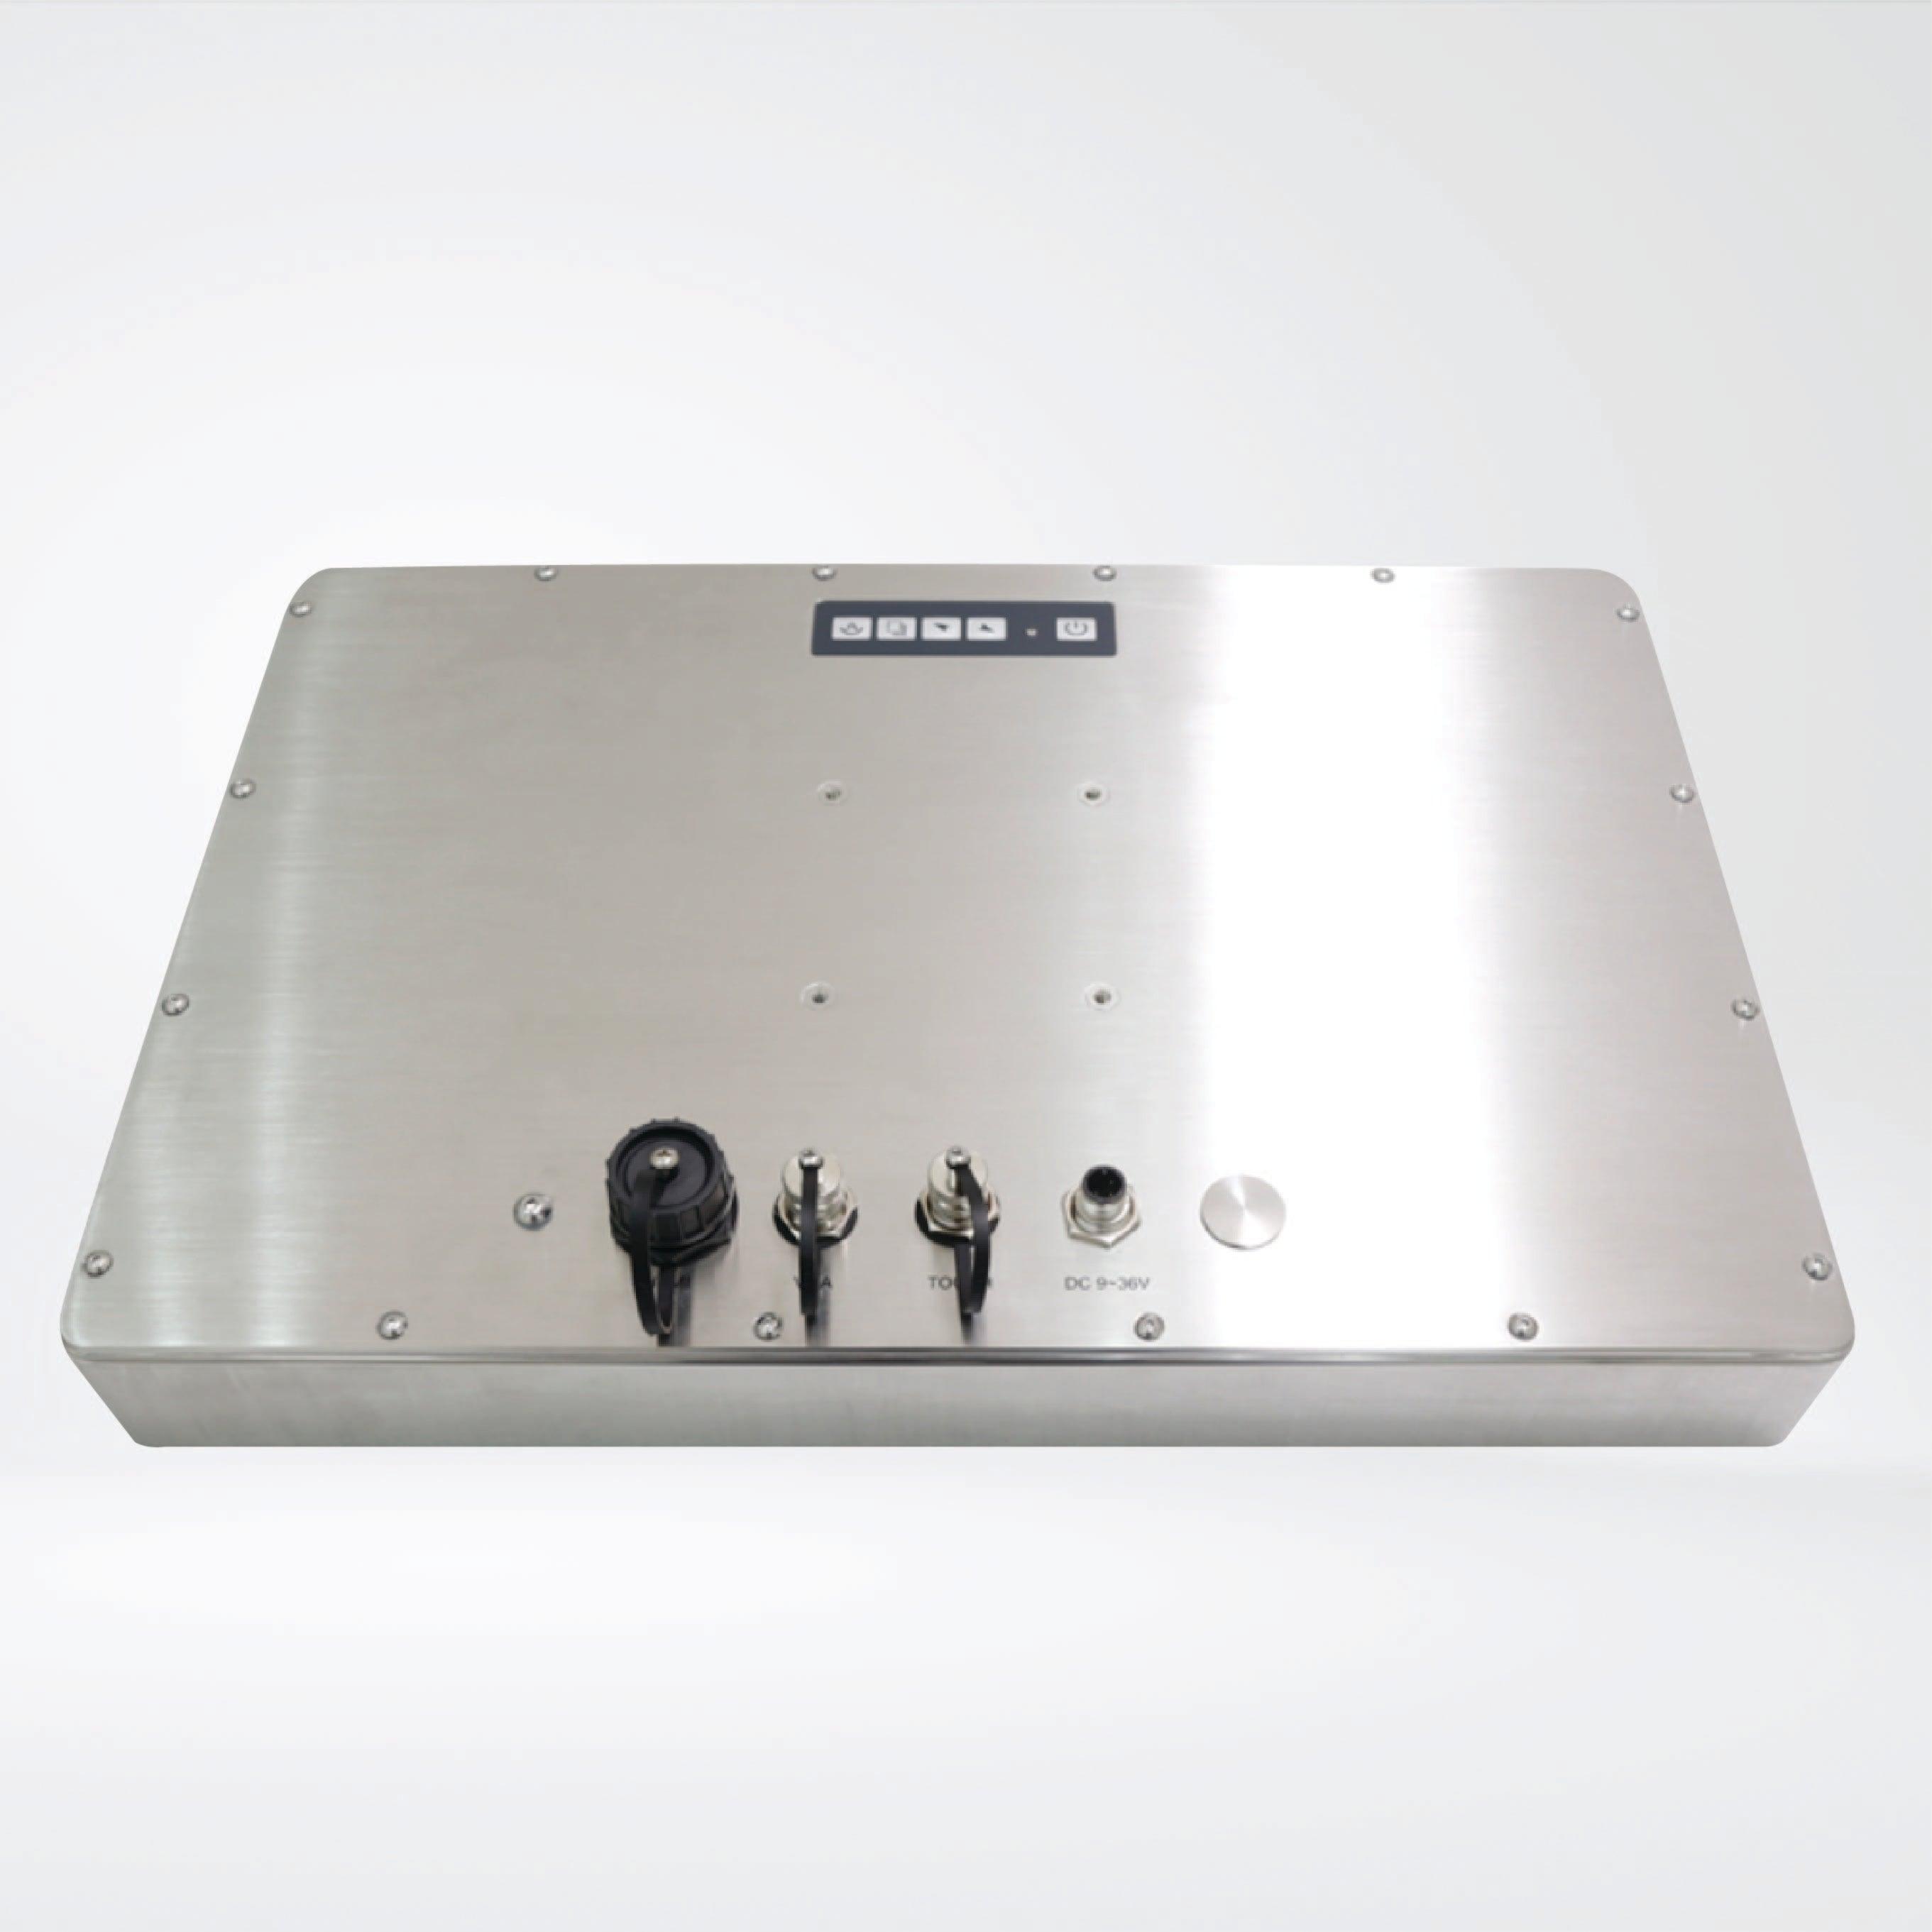 ViTAM-116G 15.6″ New Gen. IP66/IP69K Stainless Steel Display - Riverplus